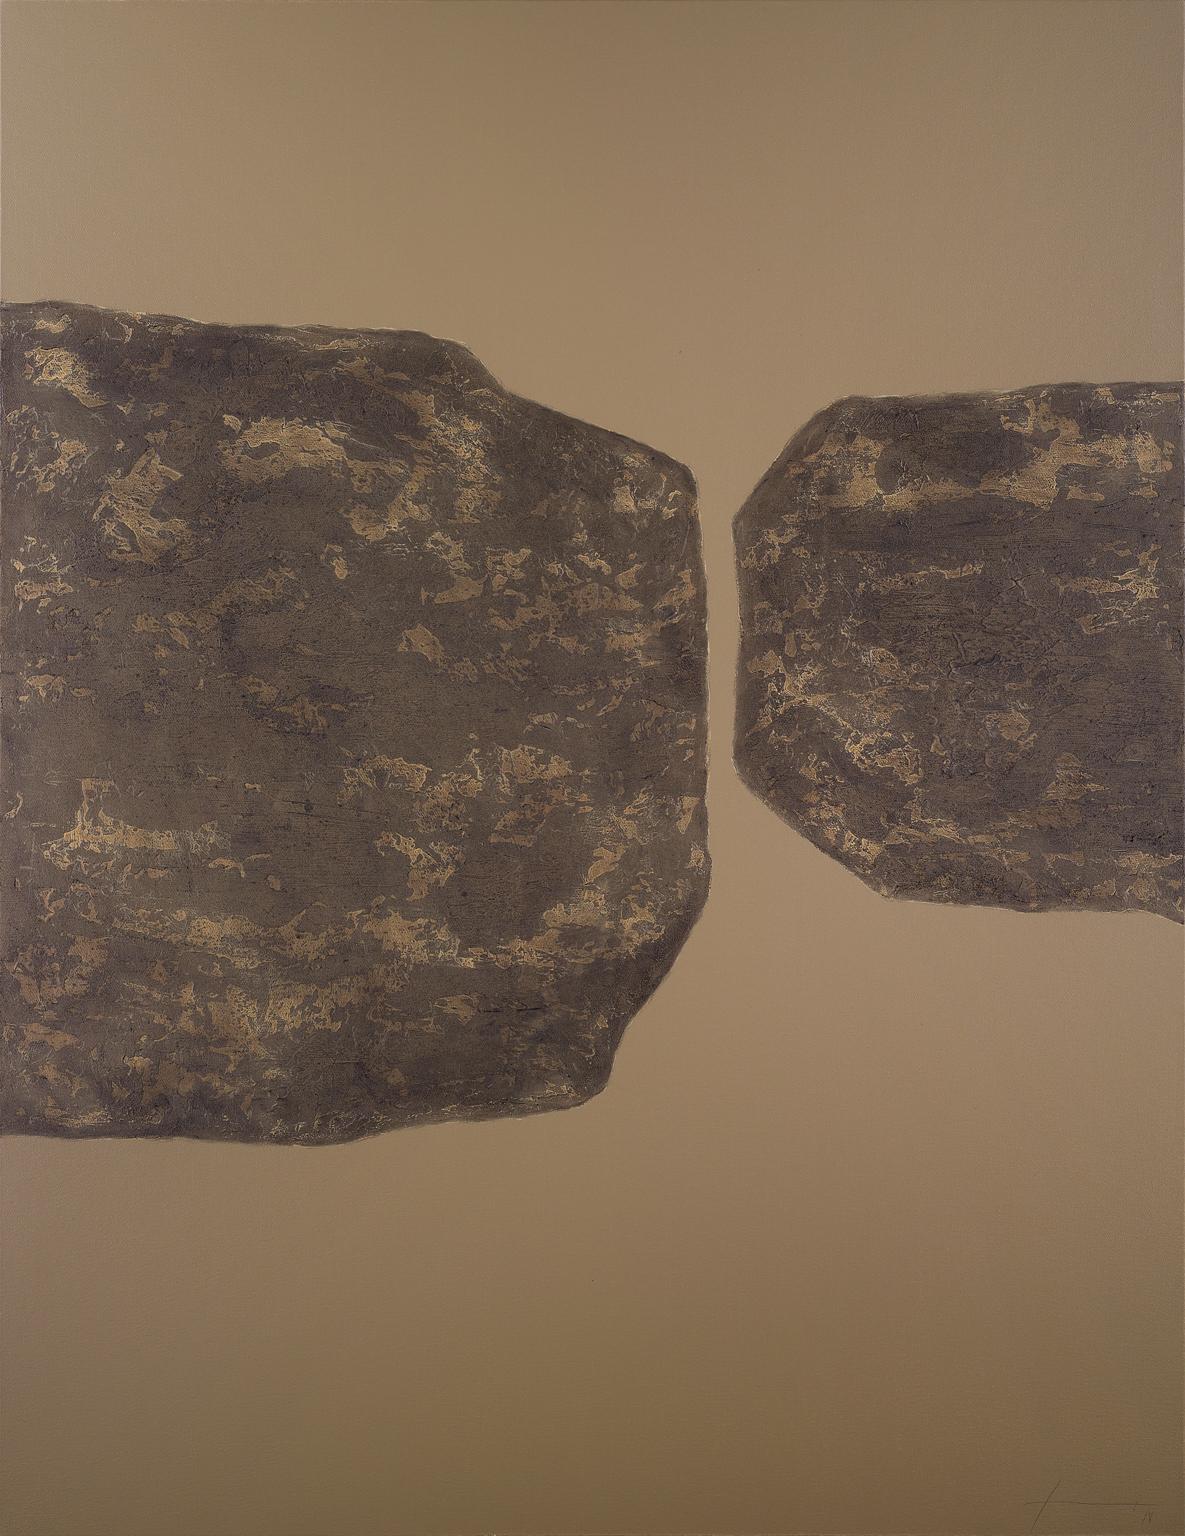 Abstract Painting Jon Errazu - Stones XXXIV - 21e siècle, contemporain, peinture abstraite, techniques mixtes